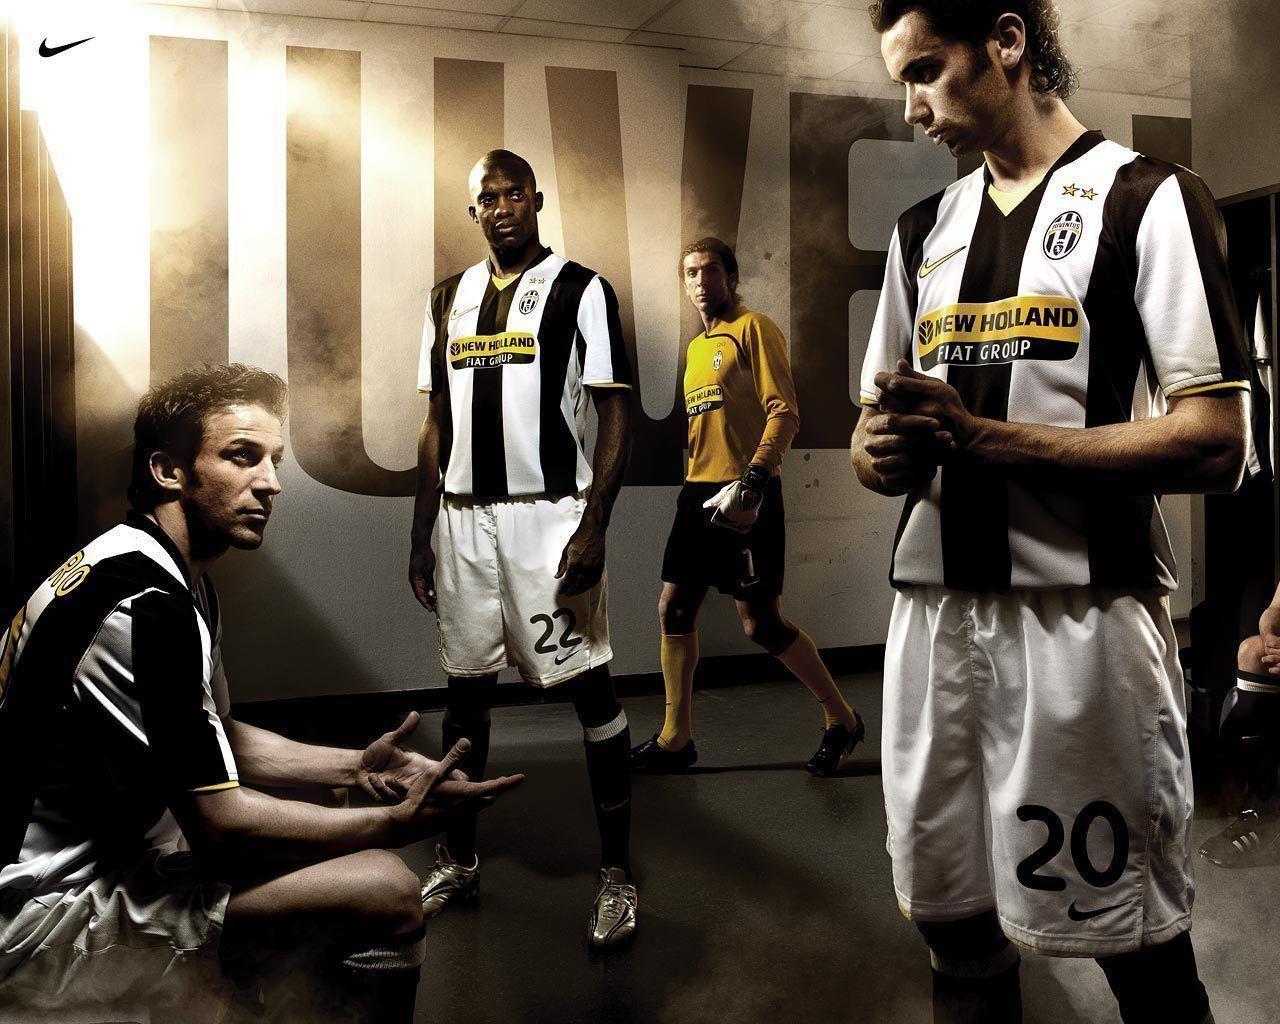 Juventus Legend Football Wallpaper Desktop Wallpaper. High